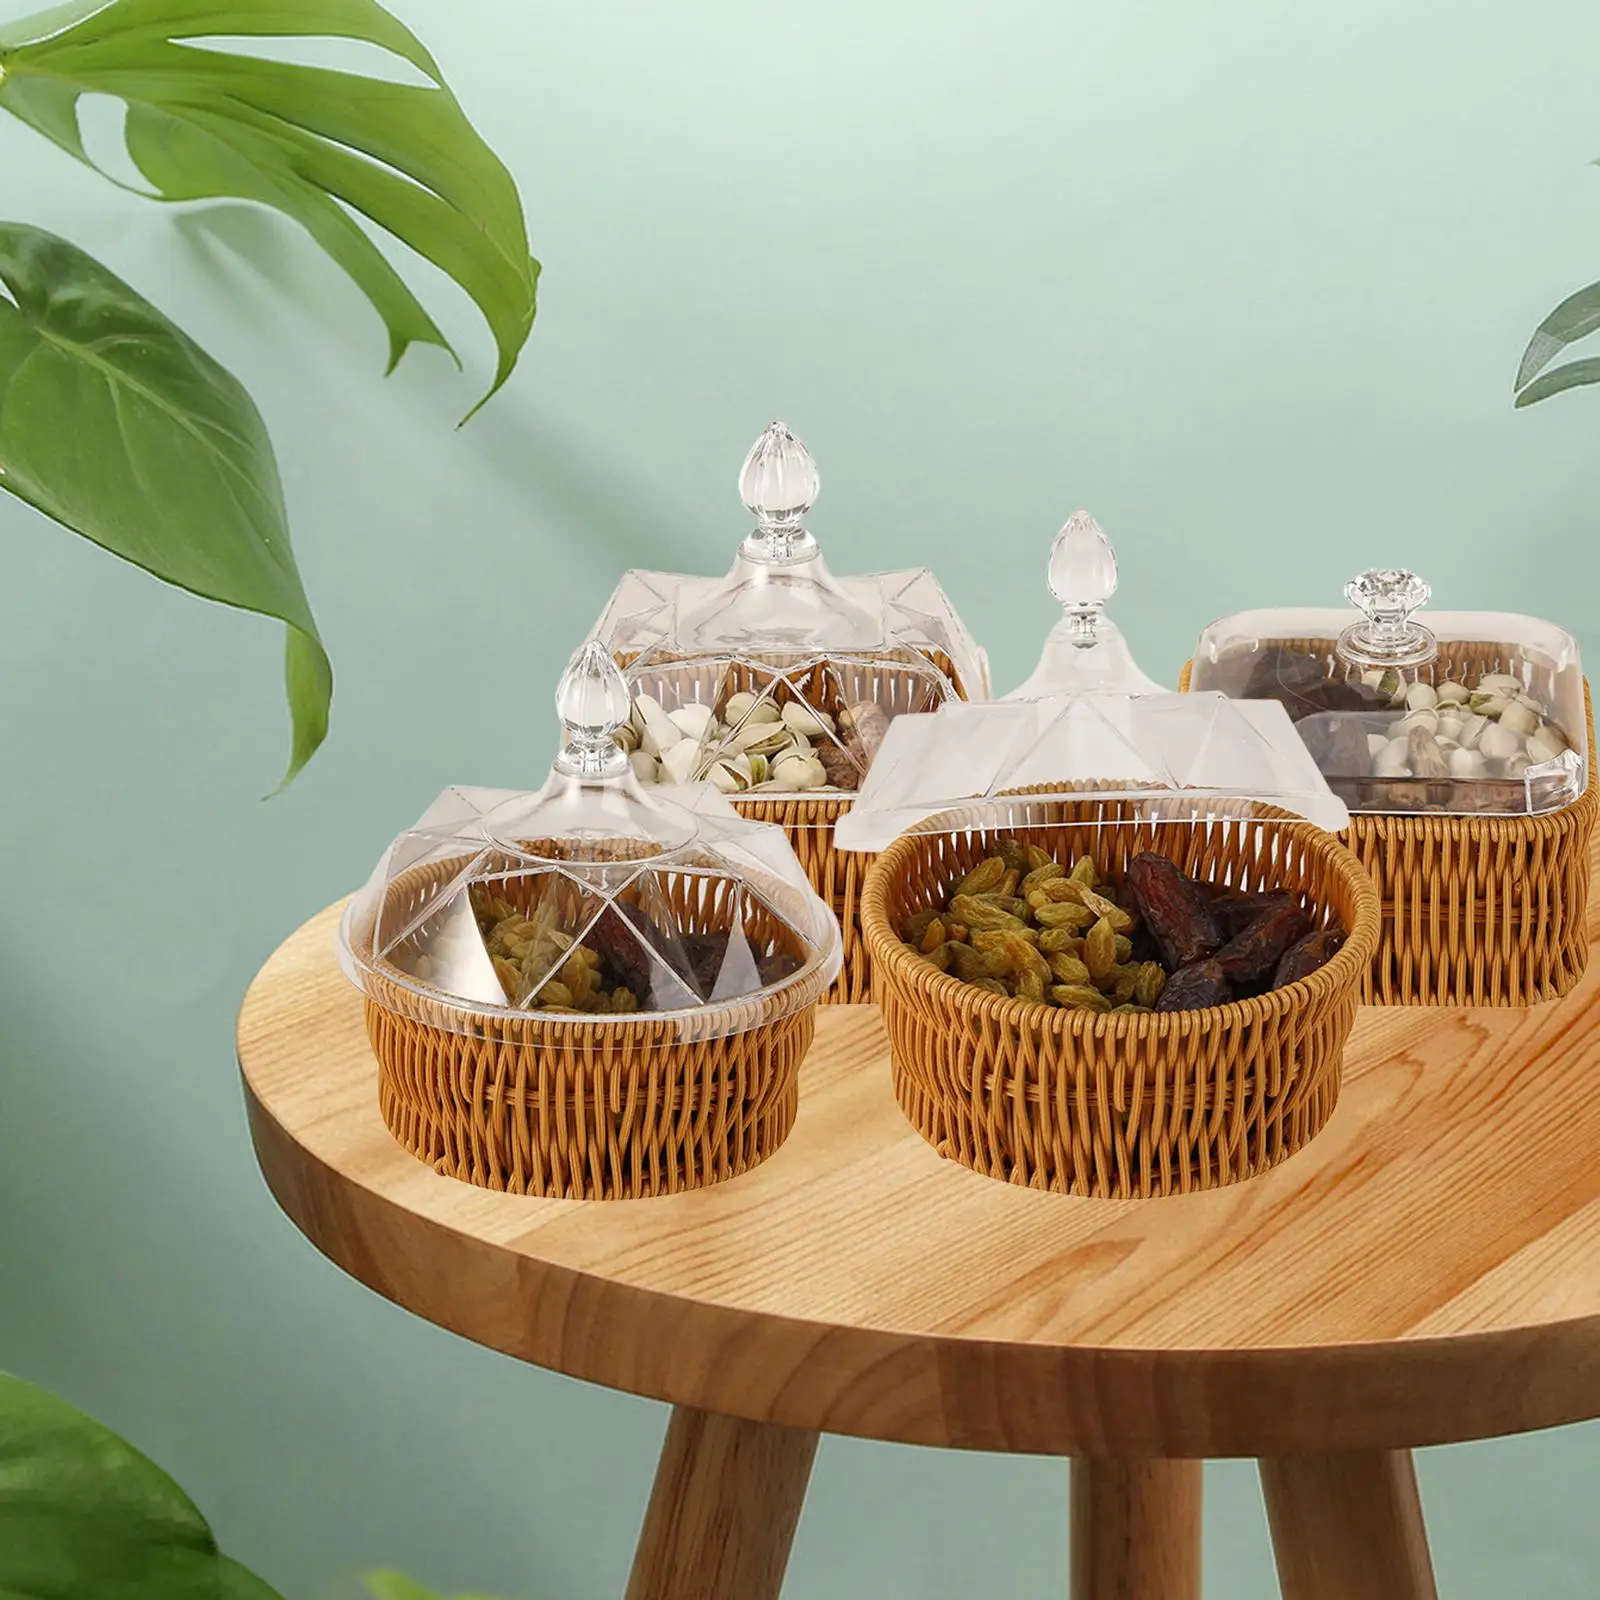 Wicker Basket Key Holder Storage Bowls Serving Tray Multipurpose Fruit Bowl Vegetable Basket for Home Room Shelf Kitchen